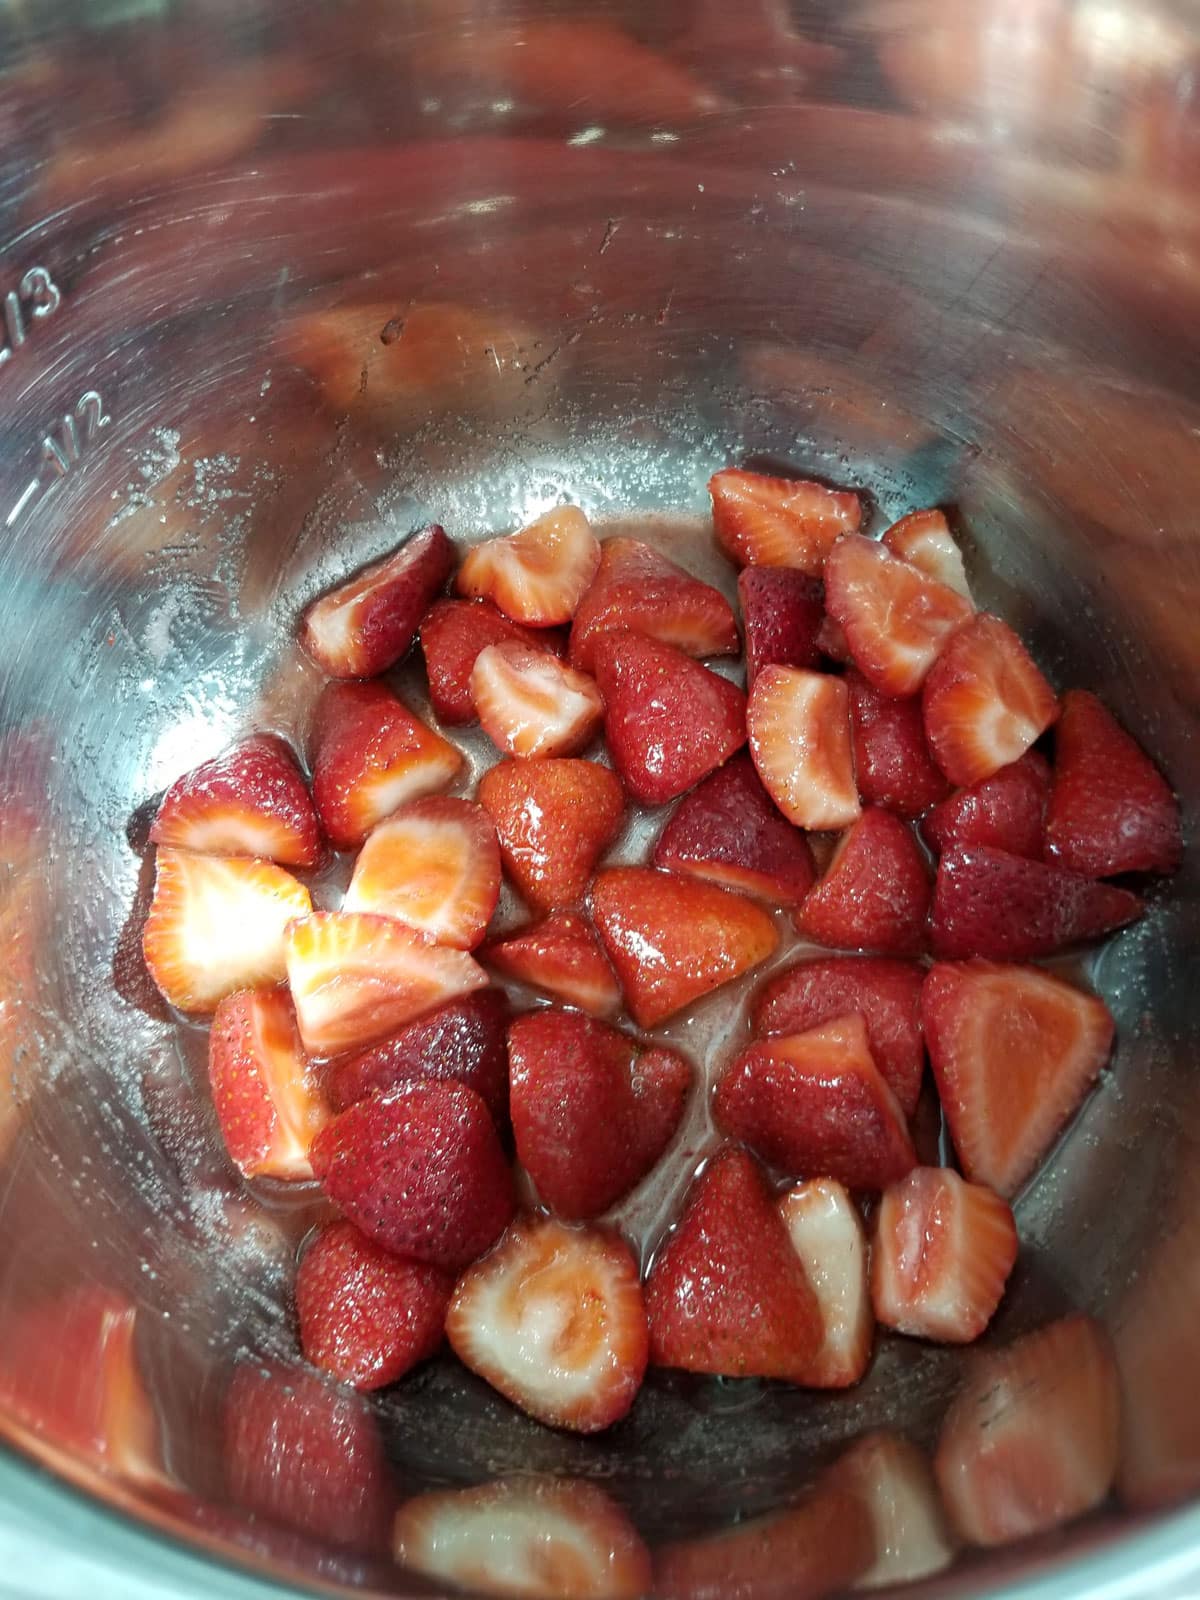 strawberries and sugar mixed